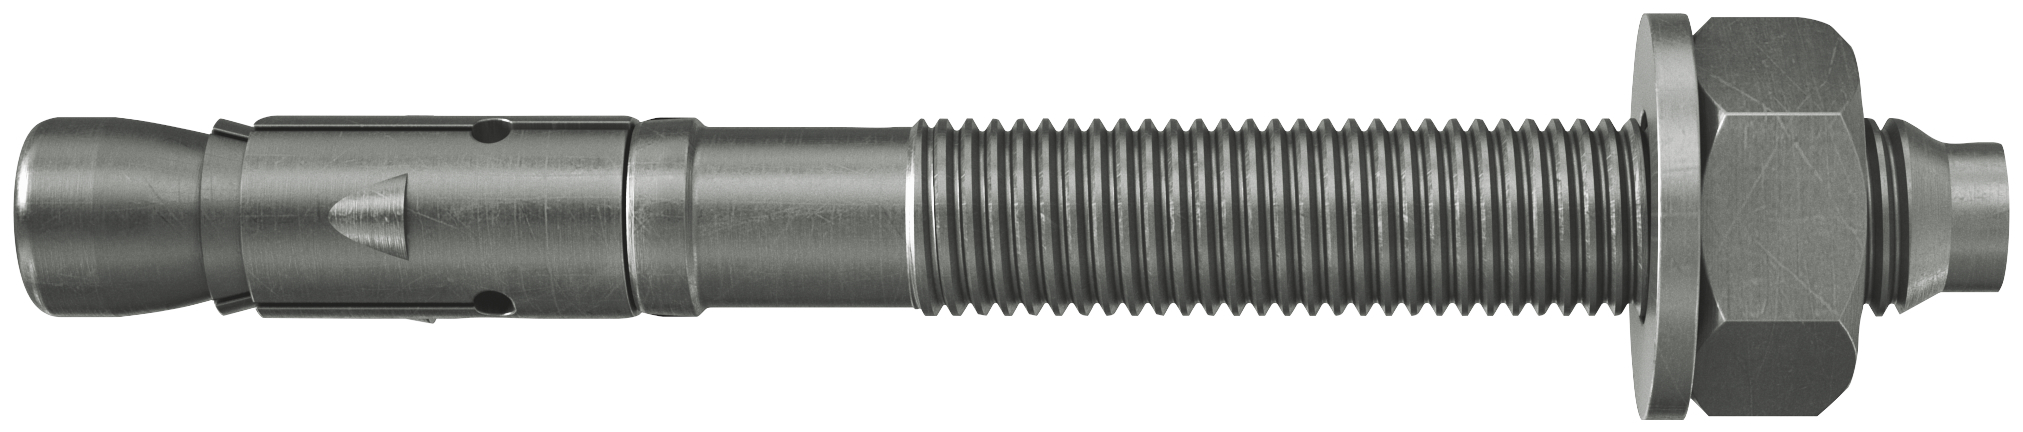 fischer Tassello acciaio FAZ II 12/10 A4 (20 Pz.) L'ancorante ad espansione ad alte prestazioni per carichi statici su calcestruzzo fessurato e per applicazioni sismiche. Versione in acciaio inossidabile con classe di resistenza alla corrosione CRC III..